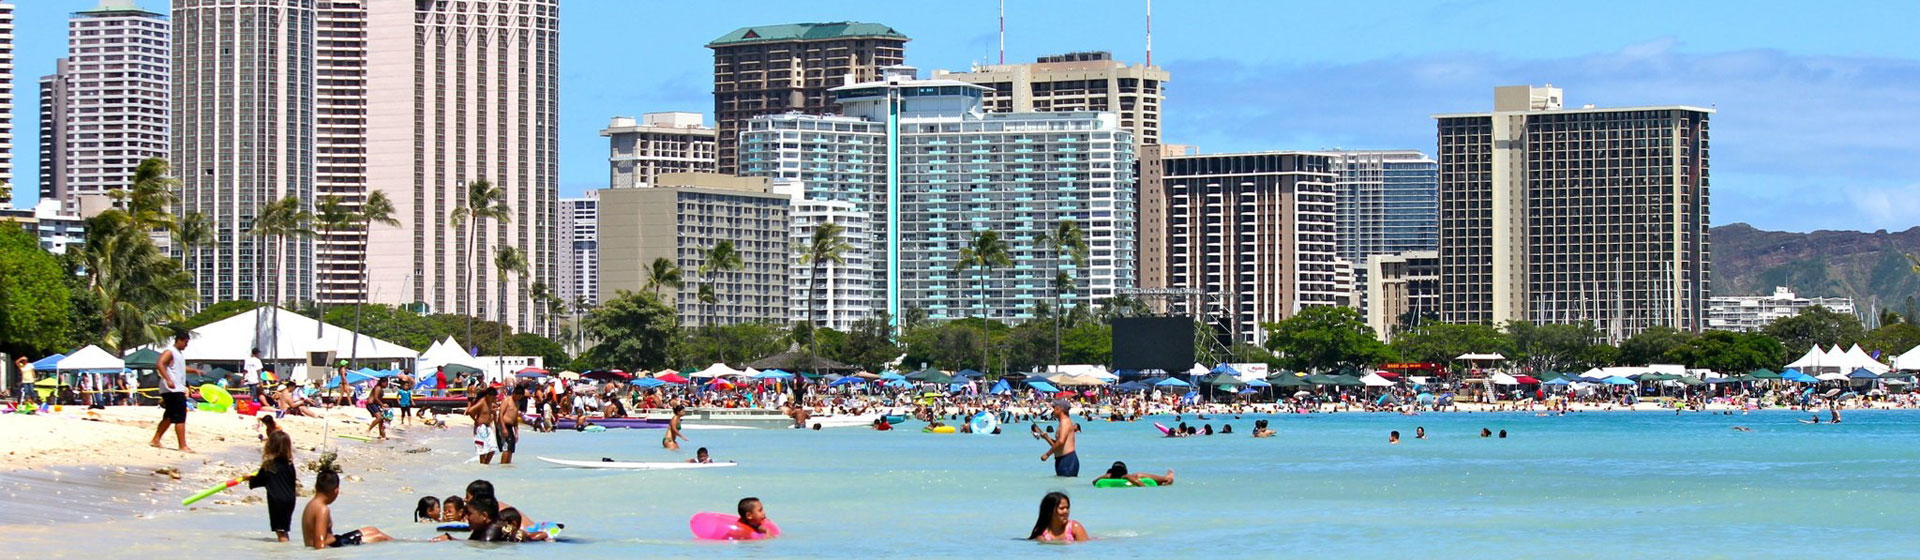 Waikiki Beach, Honolulu, Hawaii.